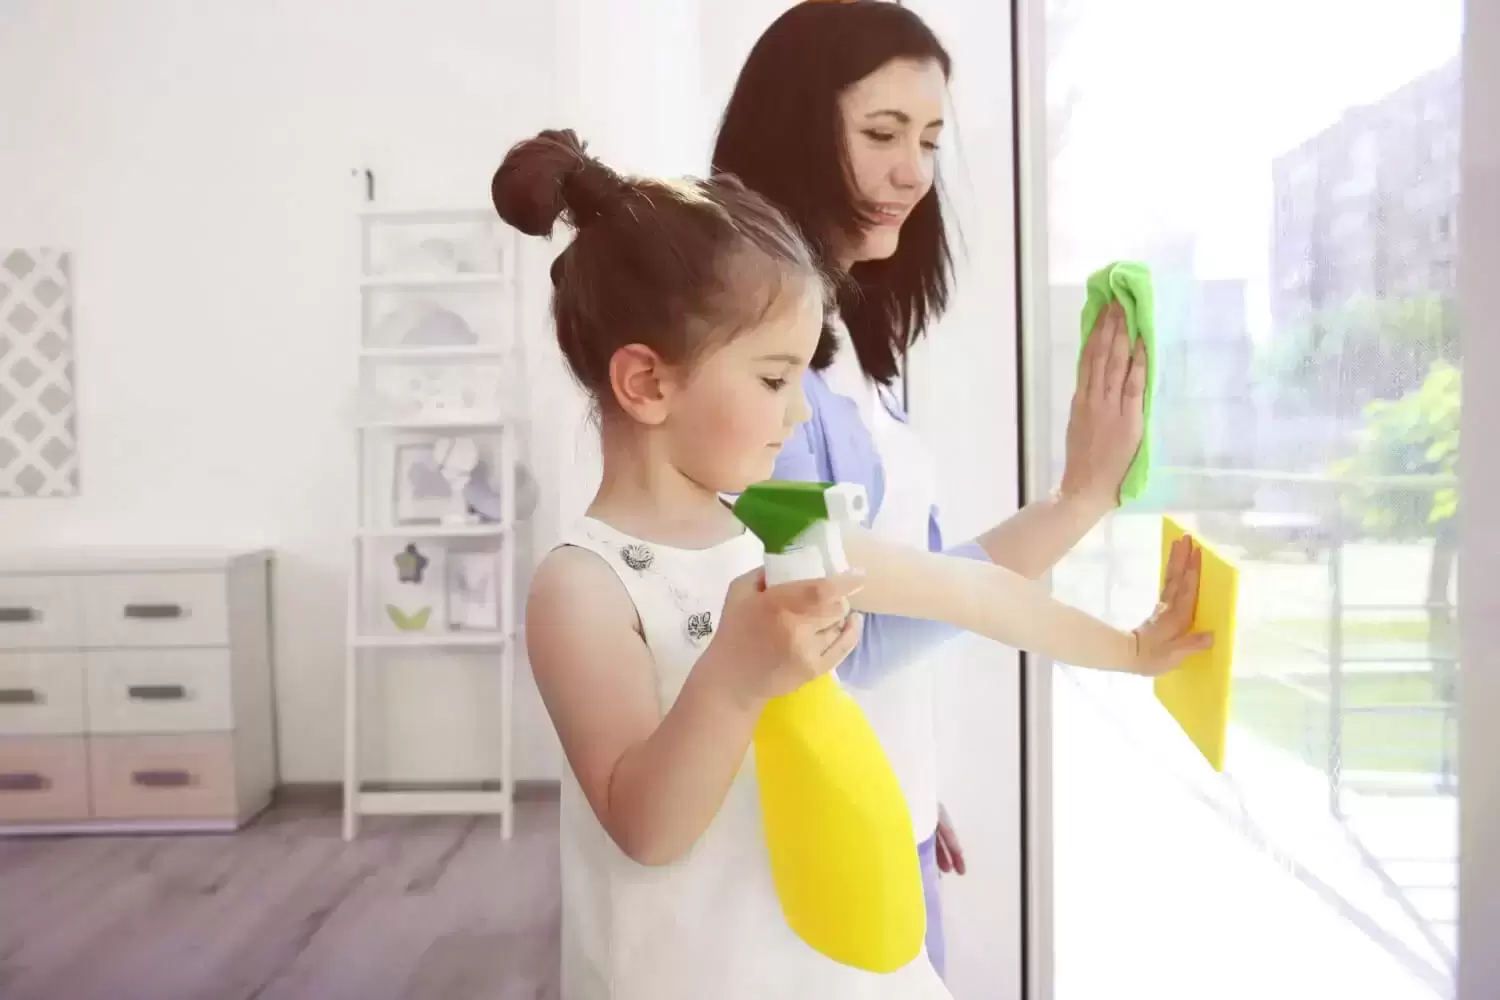 5 taisyklės, kurios padės lengvai namuose palaikyti švarą